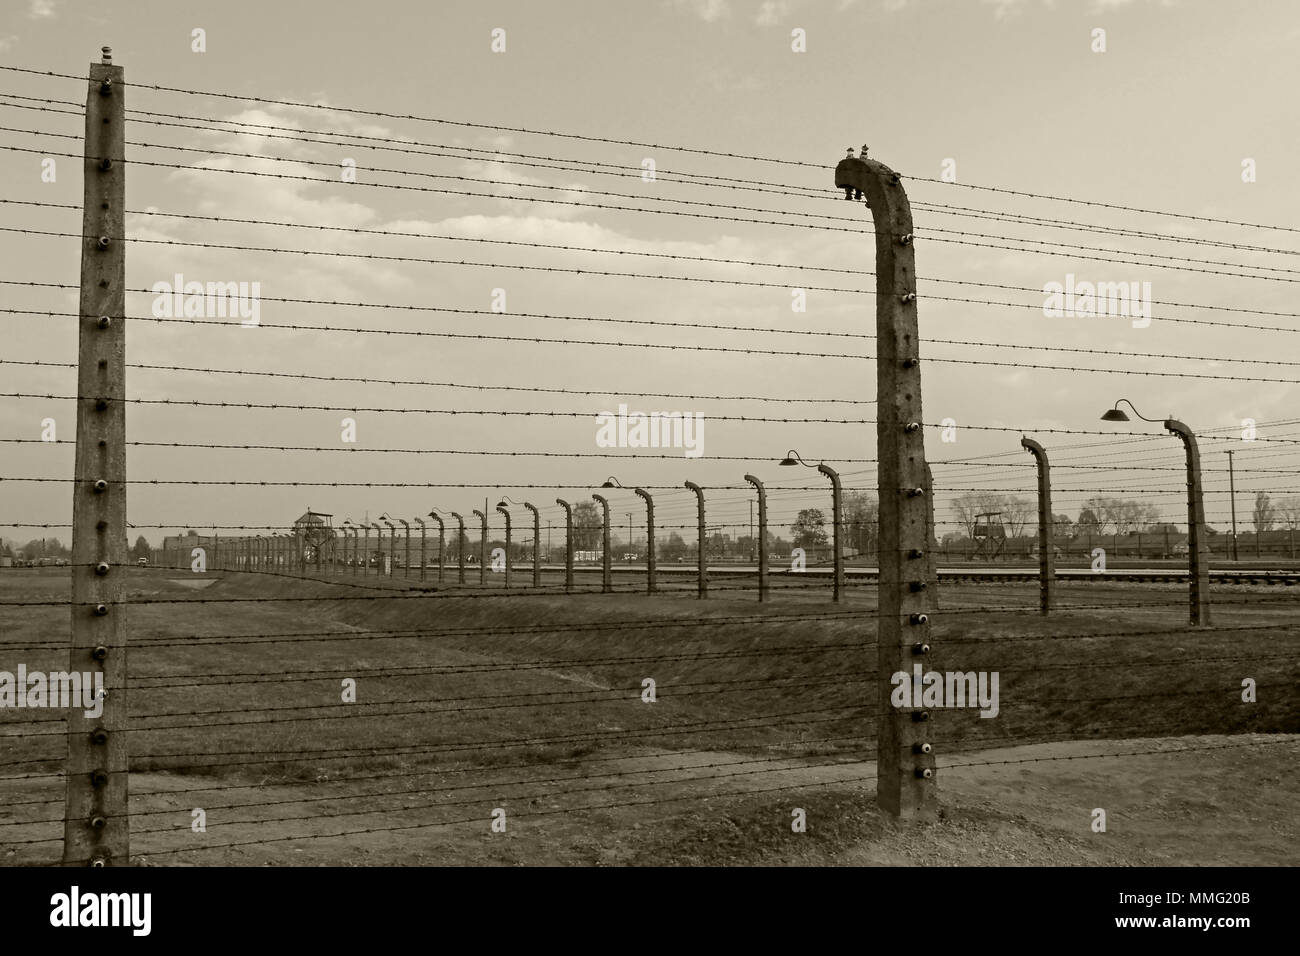 AUSCHWITZ, Polen, 12. Oktober 2013: Zaun und Wachturm im Konzentrationslager Auschwitz Birkenau KZ, Schwarz, Weiß und Beige duplex Verarbeitung Fotografie, Polen Stockfoto